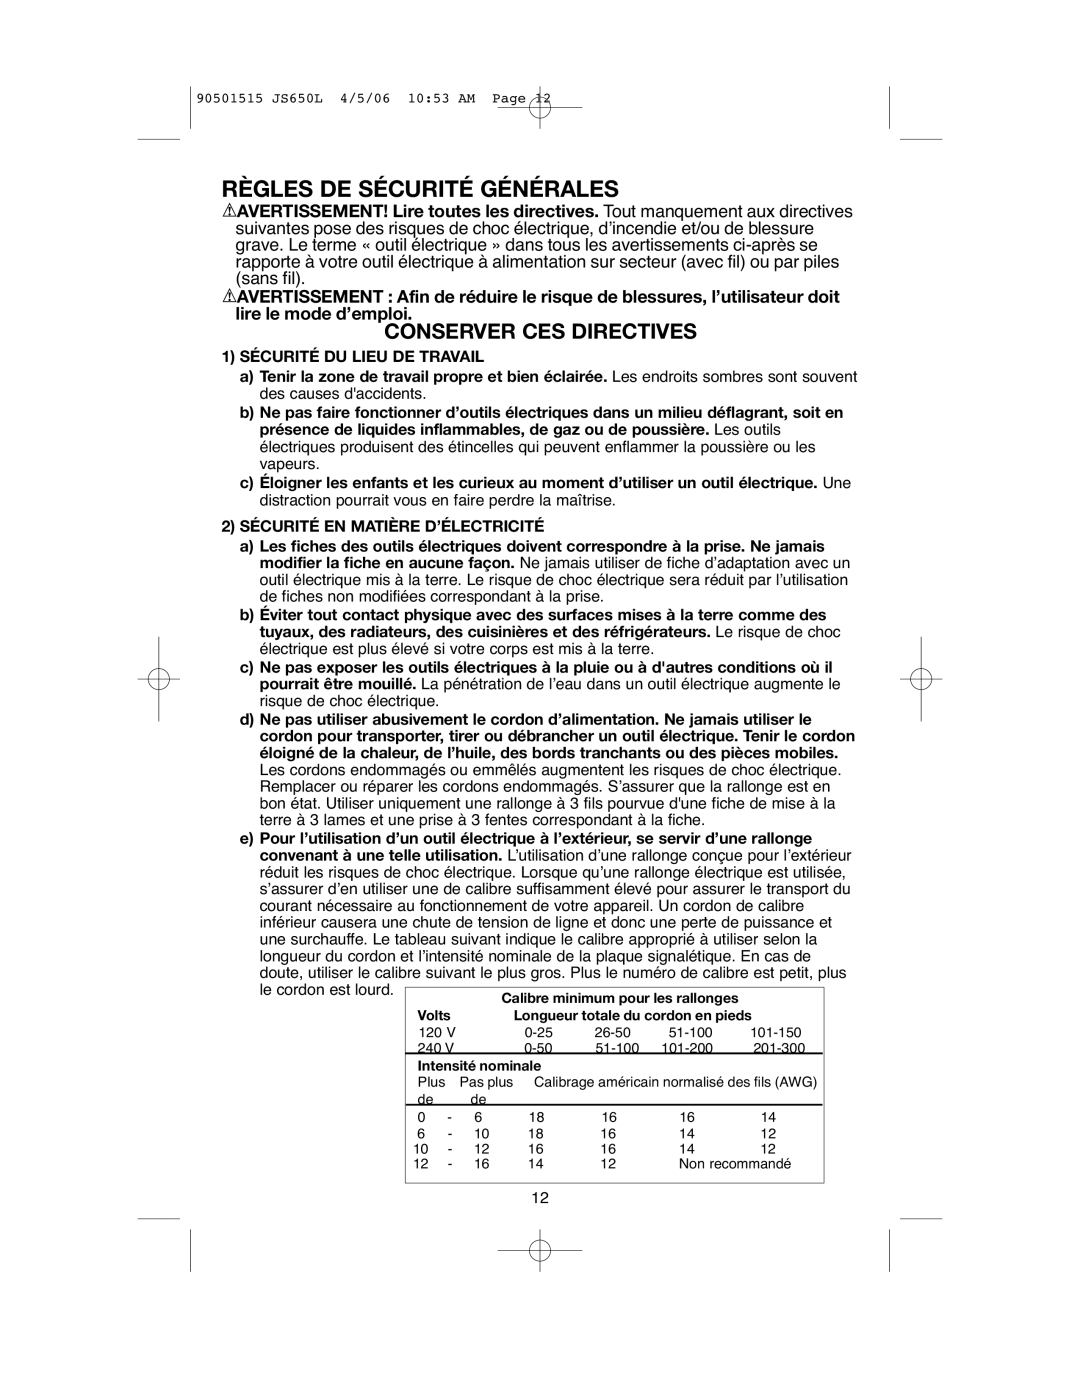 Black & Decker JS650L instruction manual Sécurité DU Lieu DE Travail, Sécurité EN Matière D’ÉLECTRICITÉ 